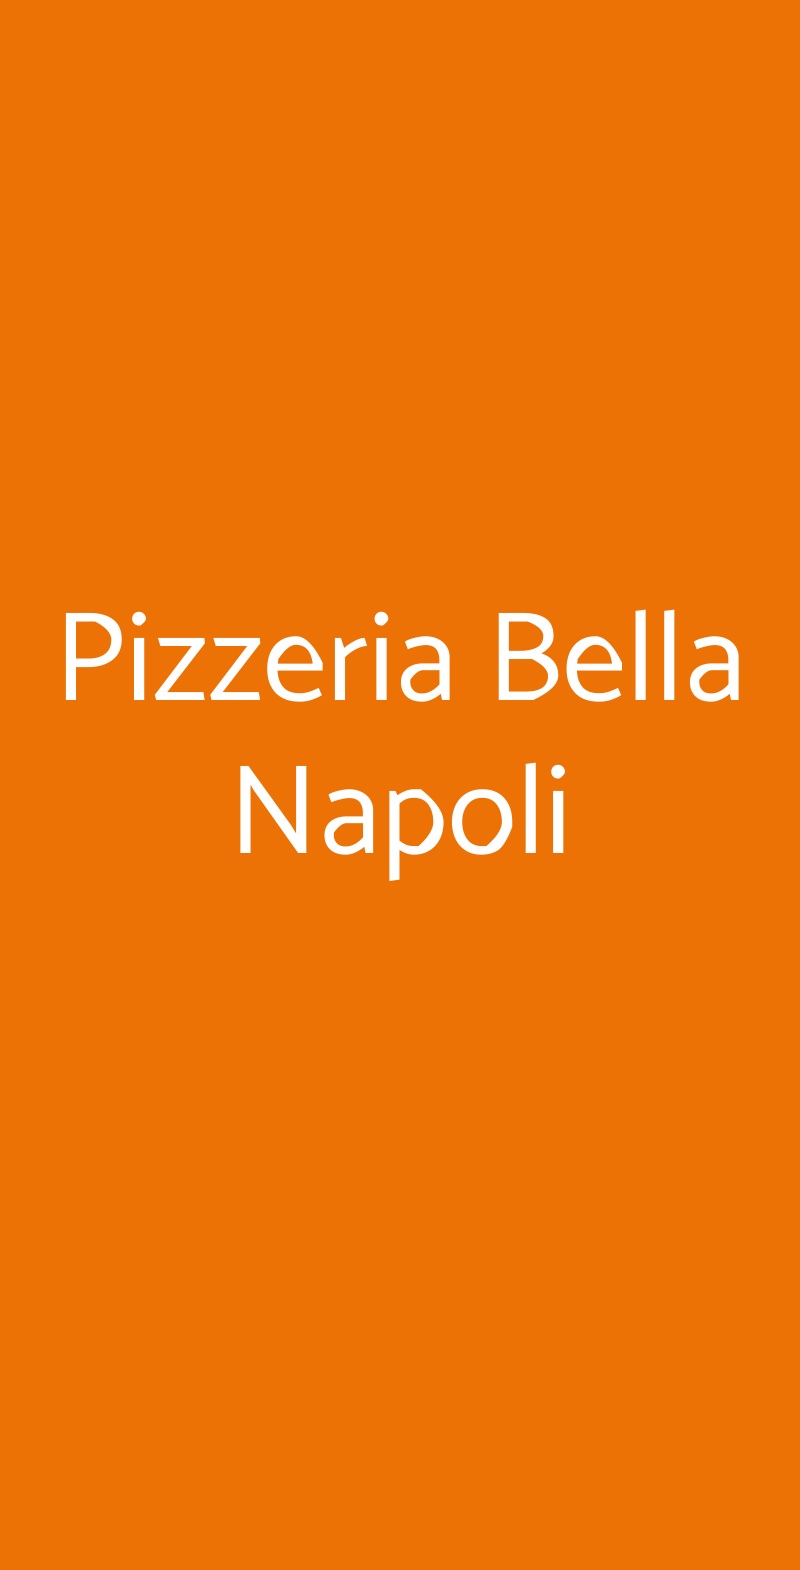 Pizzeria Bella Napoli Casale Monferrato menù 1 pagina